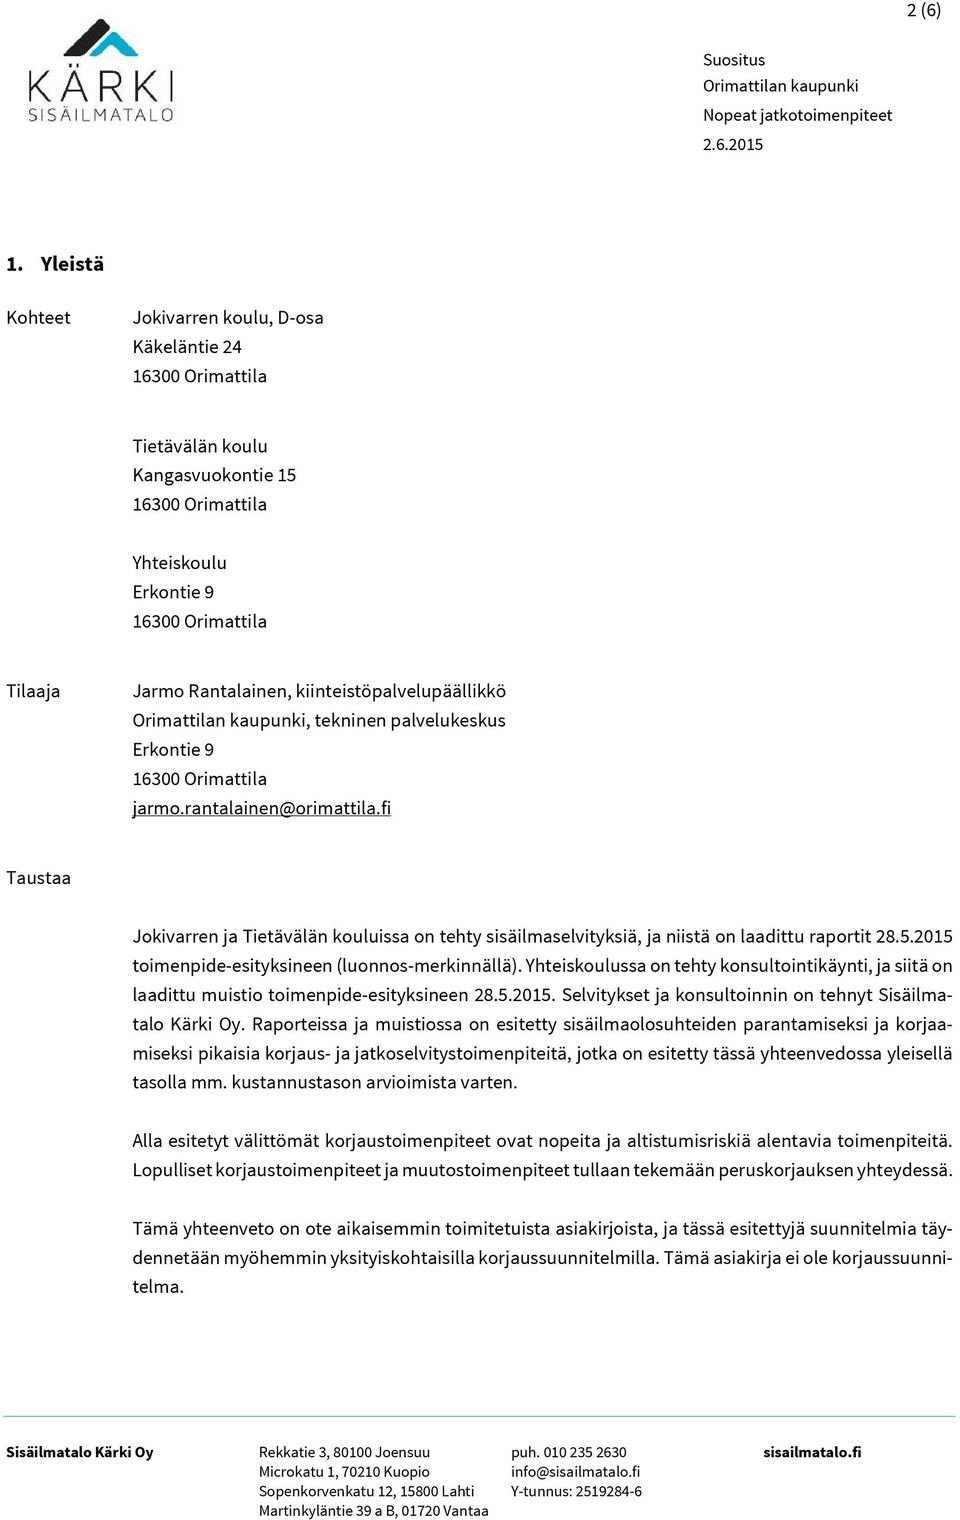 9 jarmo.rantalainen@orimattila.fi Taustaa Jokivarren ja Tietävälän kouluissa on tehty sisäilmaselvityksiä, ja niistä on laadittu raportit 28.5.2015 toimenpide-esityksineen (luonnos-merkinnällä).